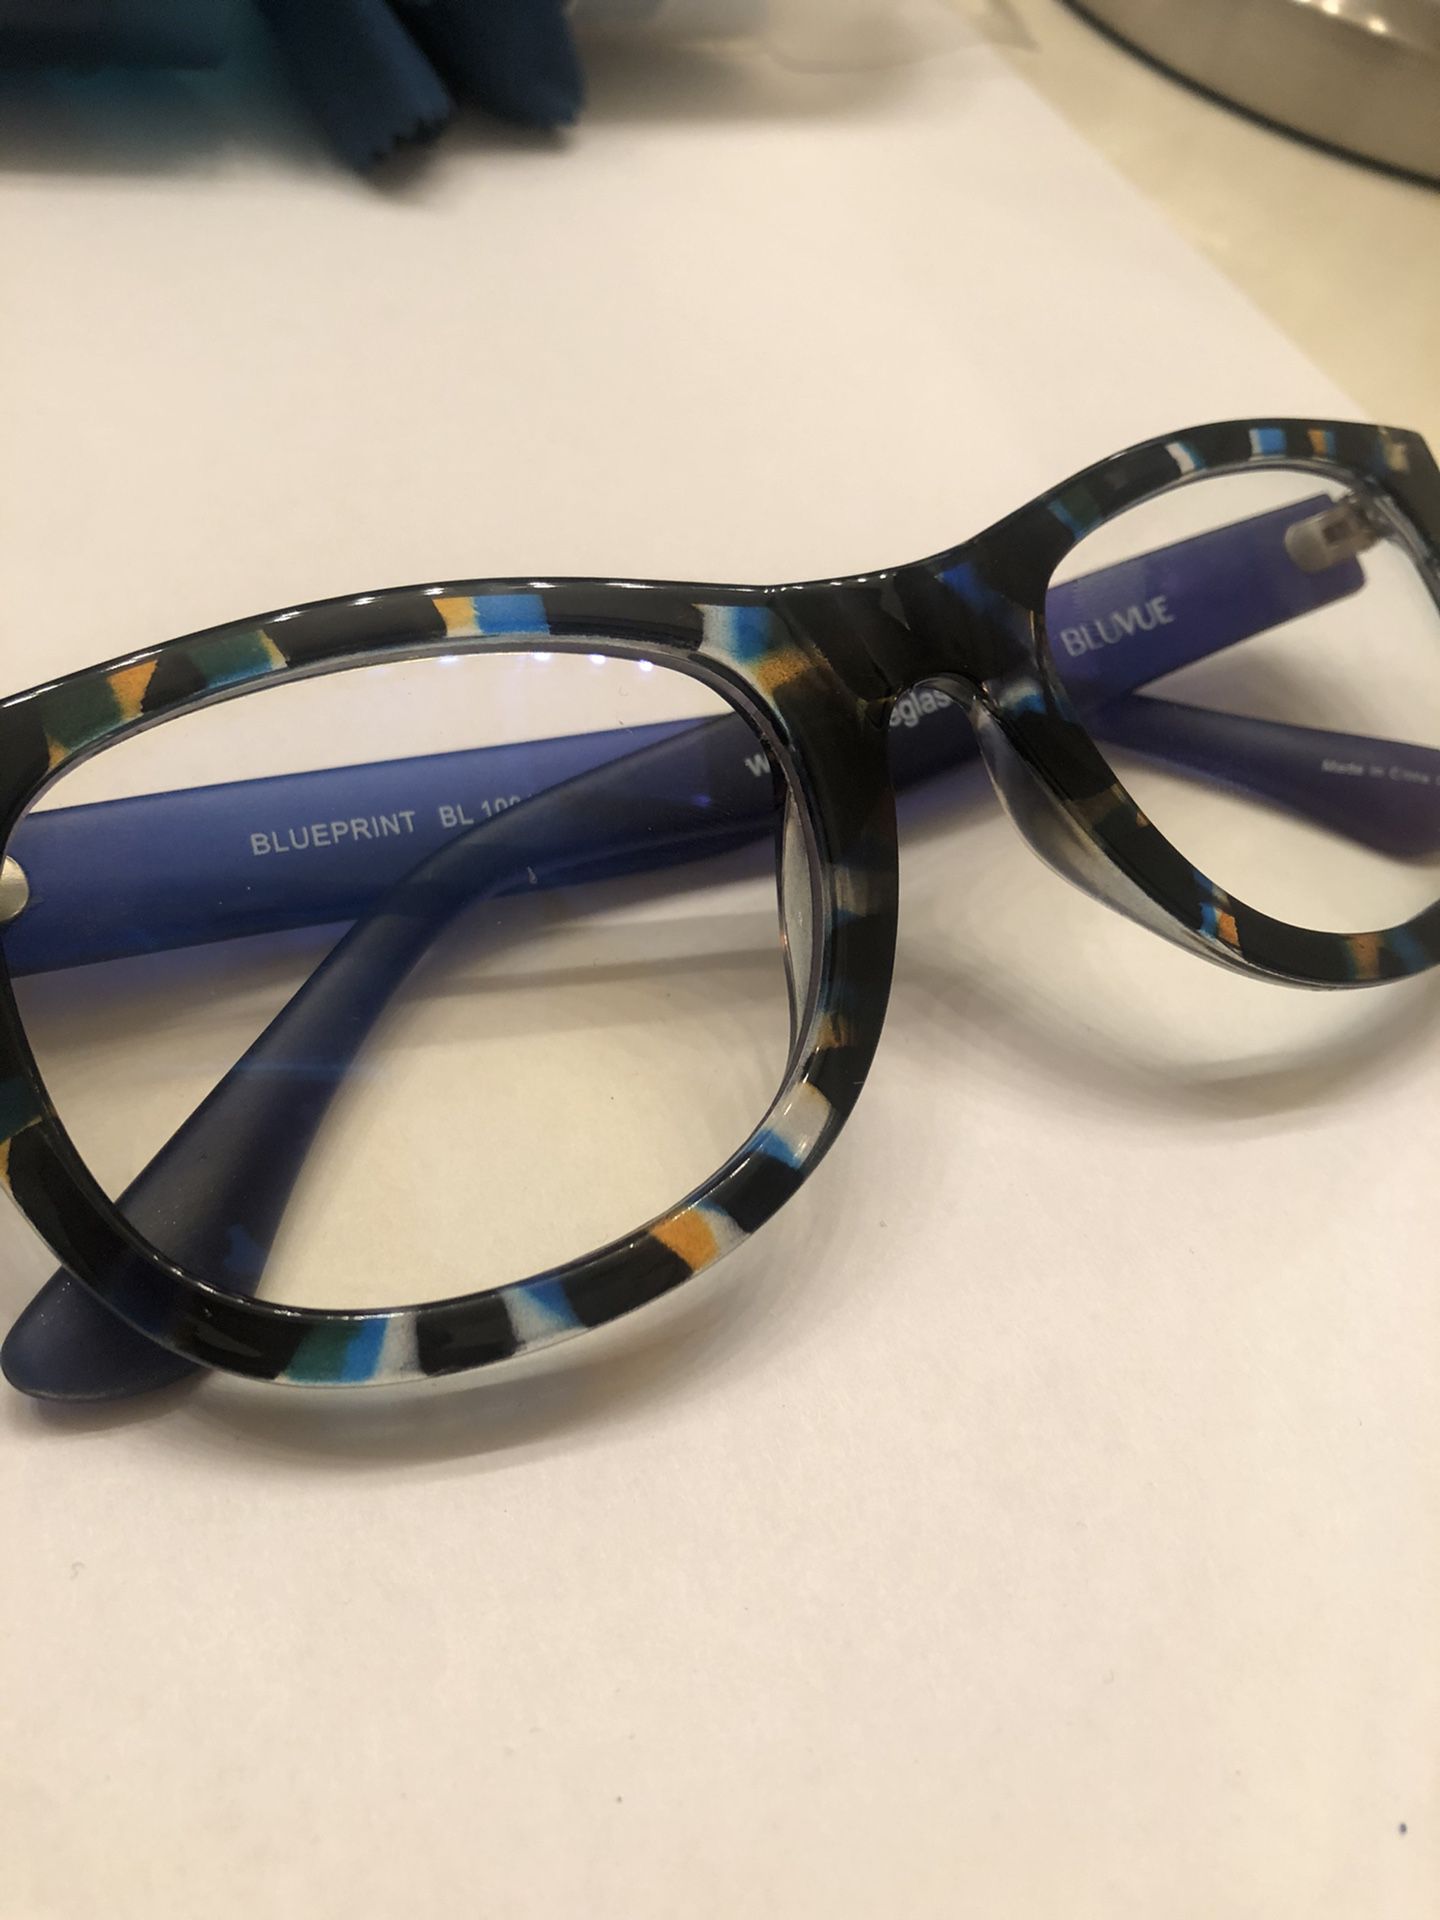 Bluvue Reading/Work Glasses (not prescription)